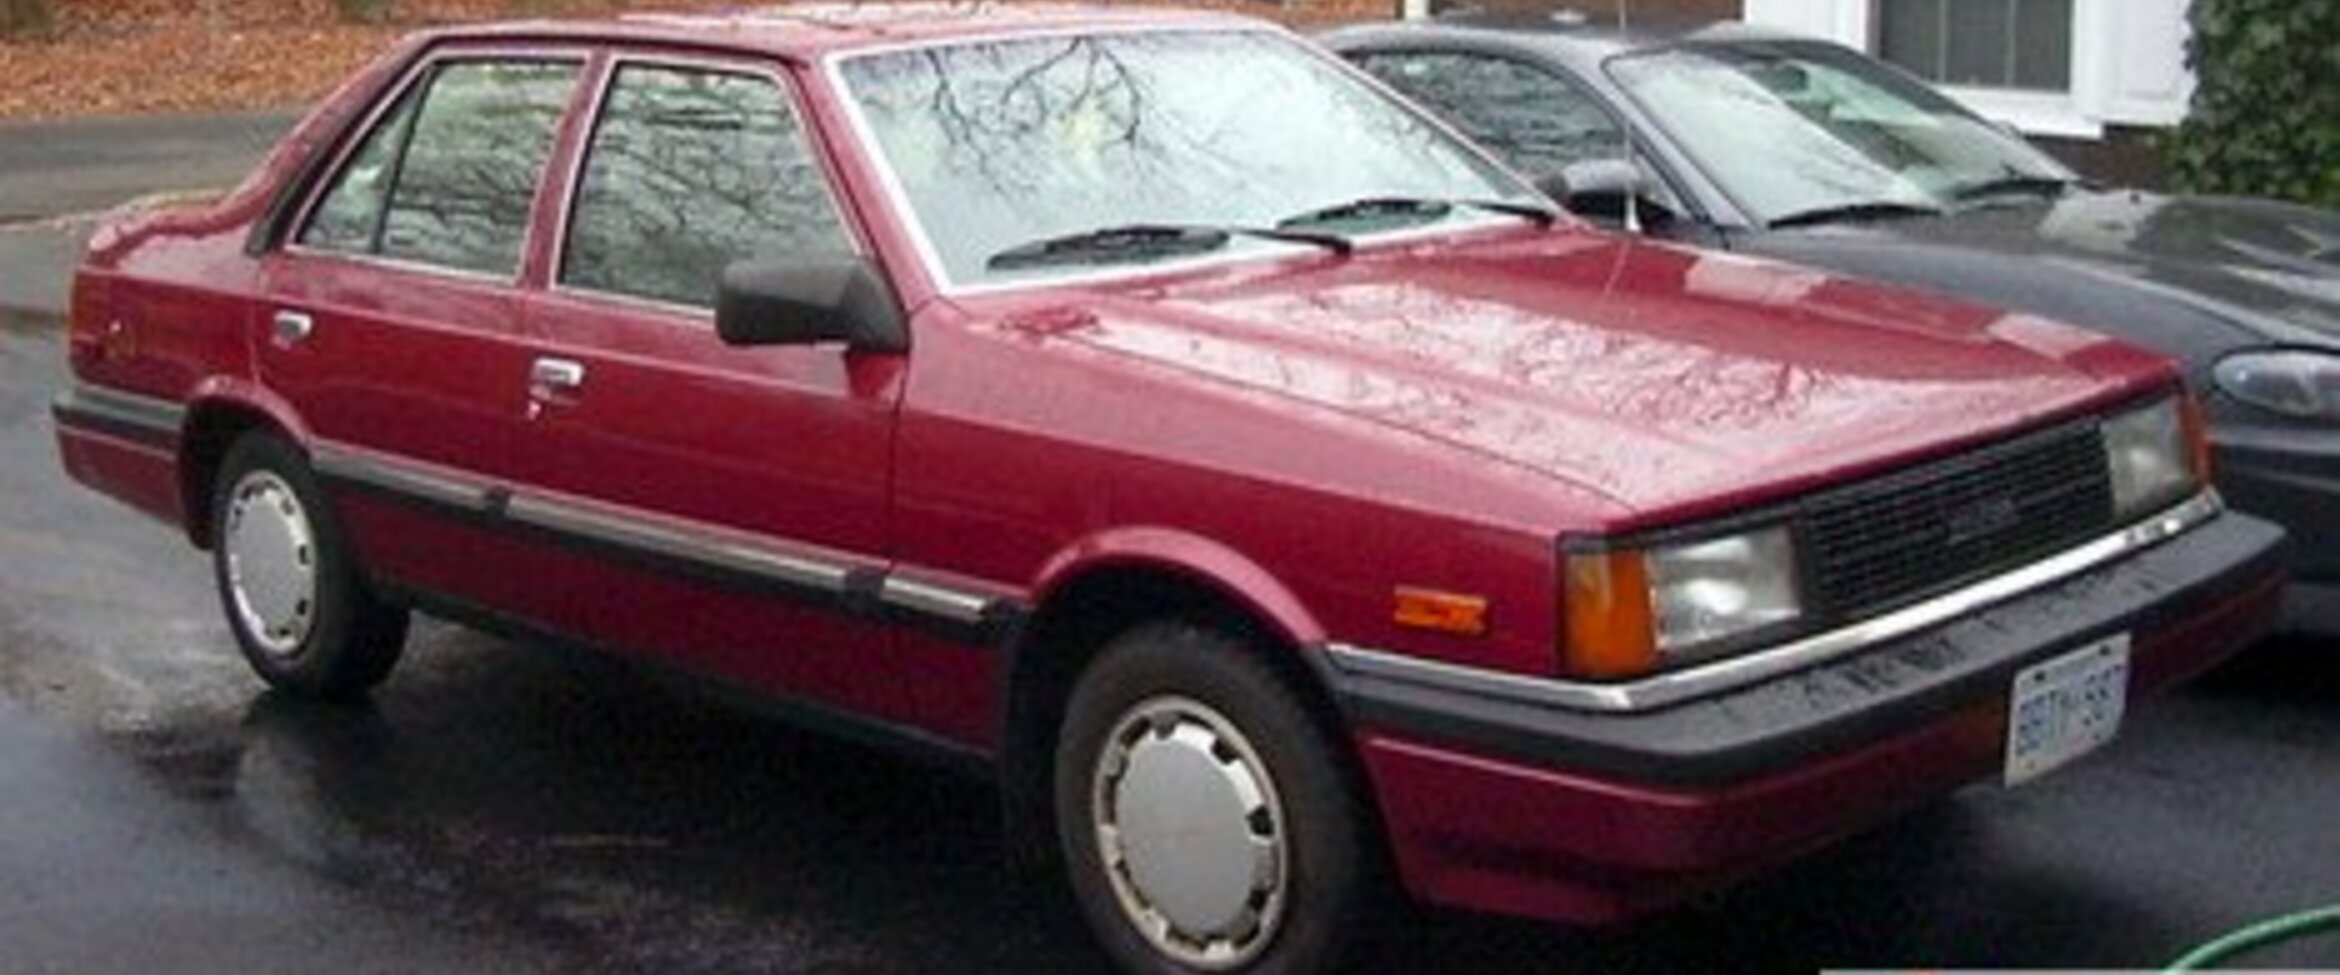 Hyundai Stellar 2.0 (93 Hp) 1983, 1984, 1985, 1986, 1987, 1988, 1989, 1990, 1991, 1992, 1993 